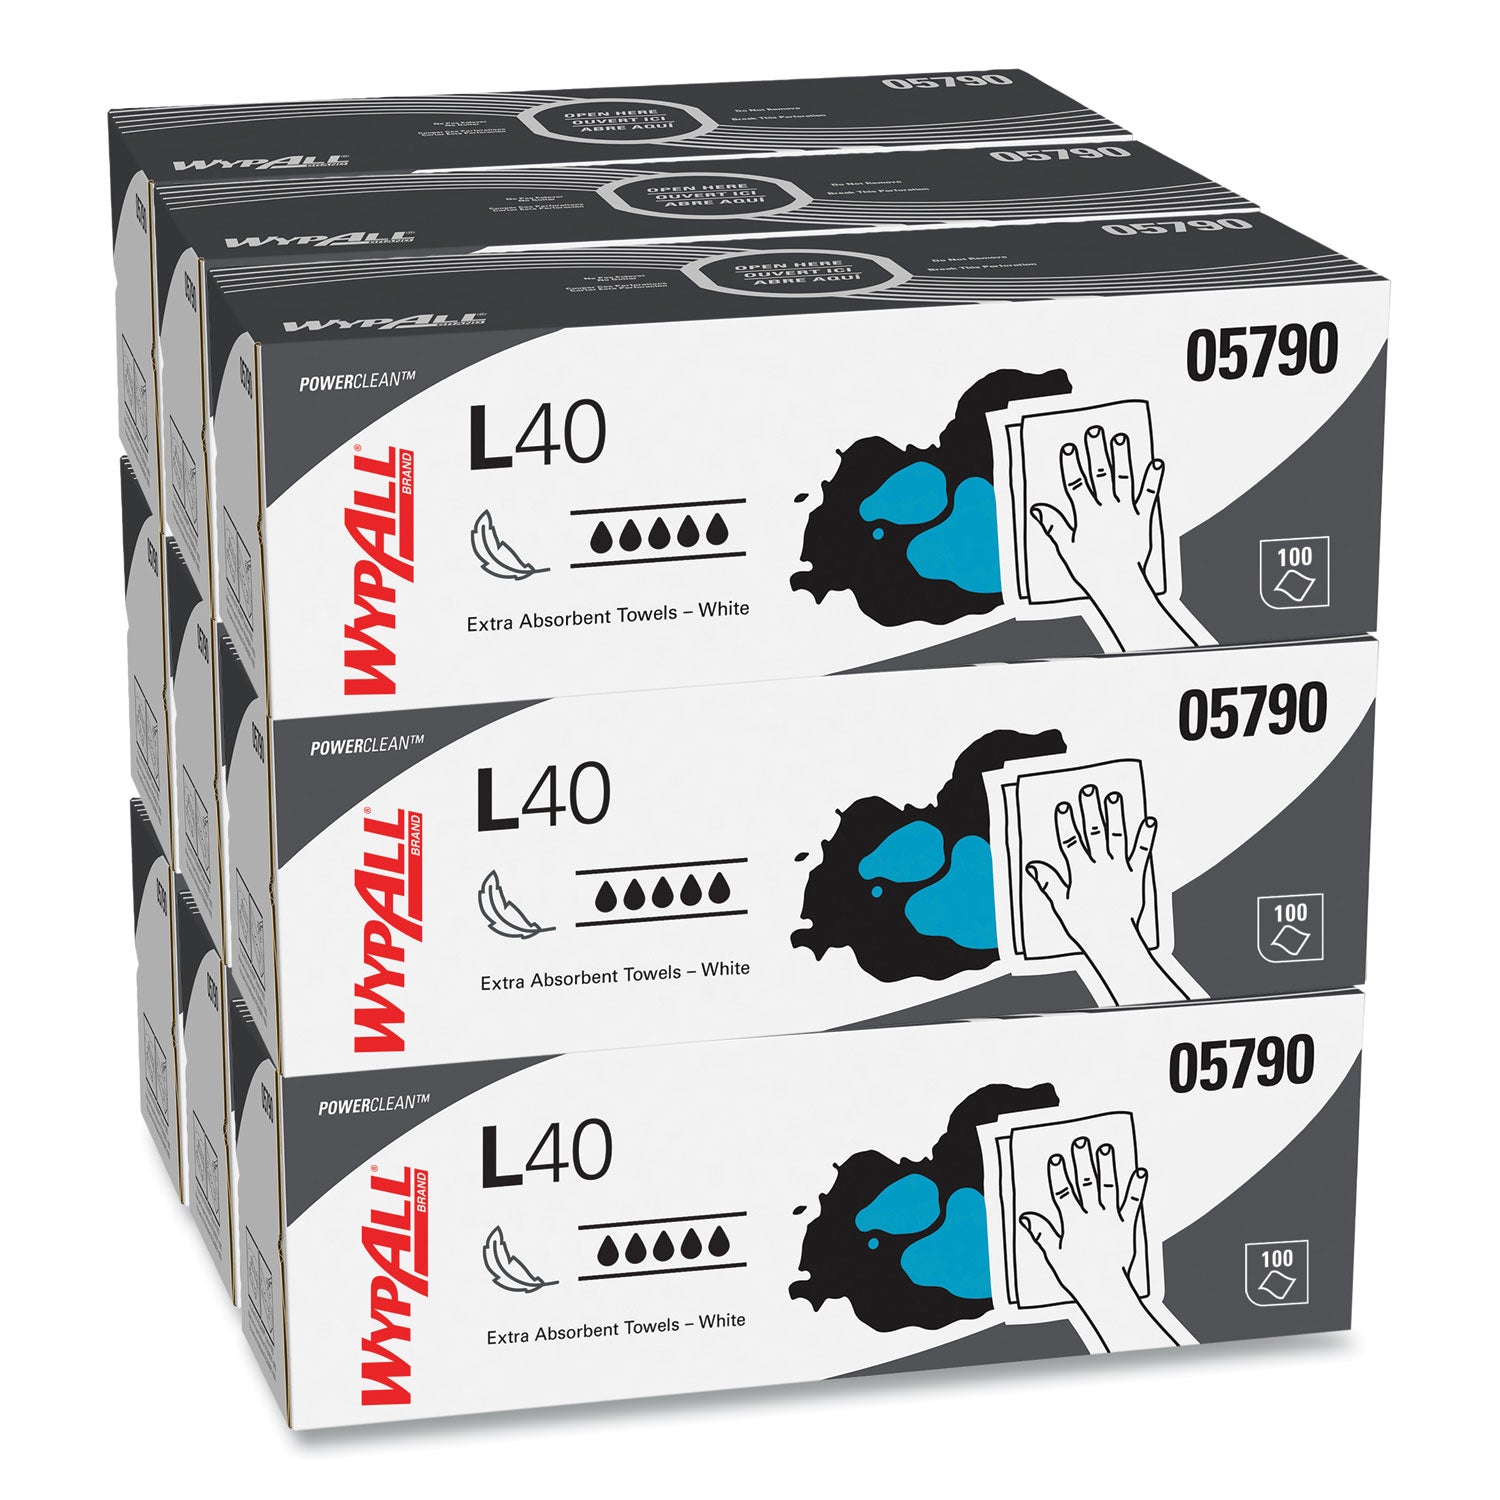 L40 Towels, POP-UP Box, 16.4 x 9.8, White, 100/Box, 9 Boxes/Carton - 